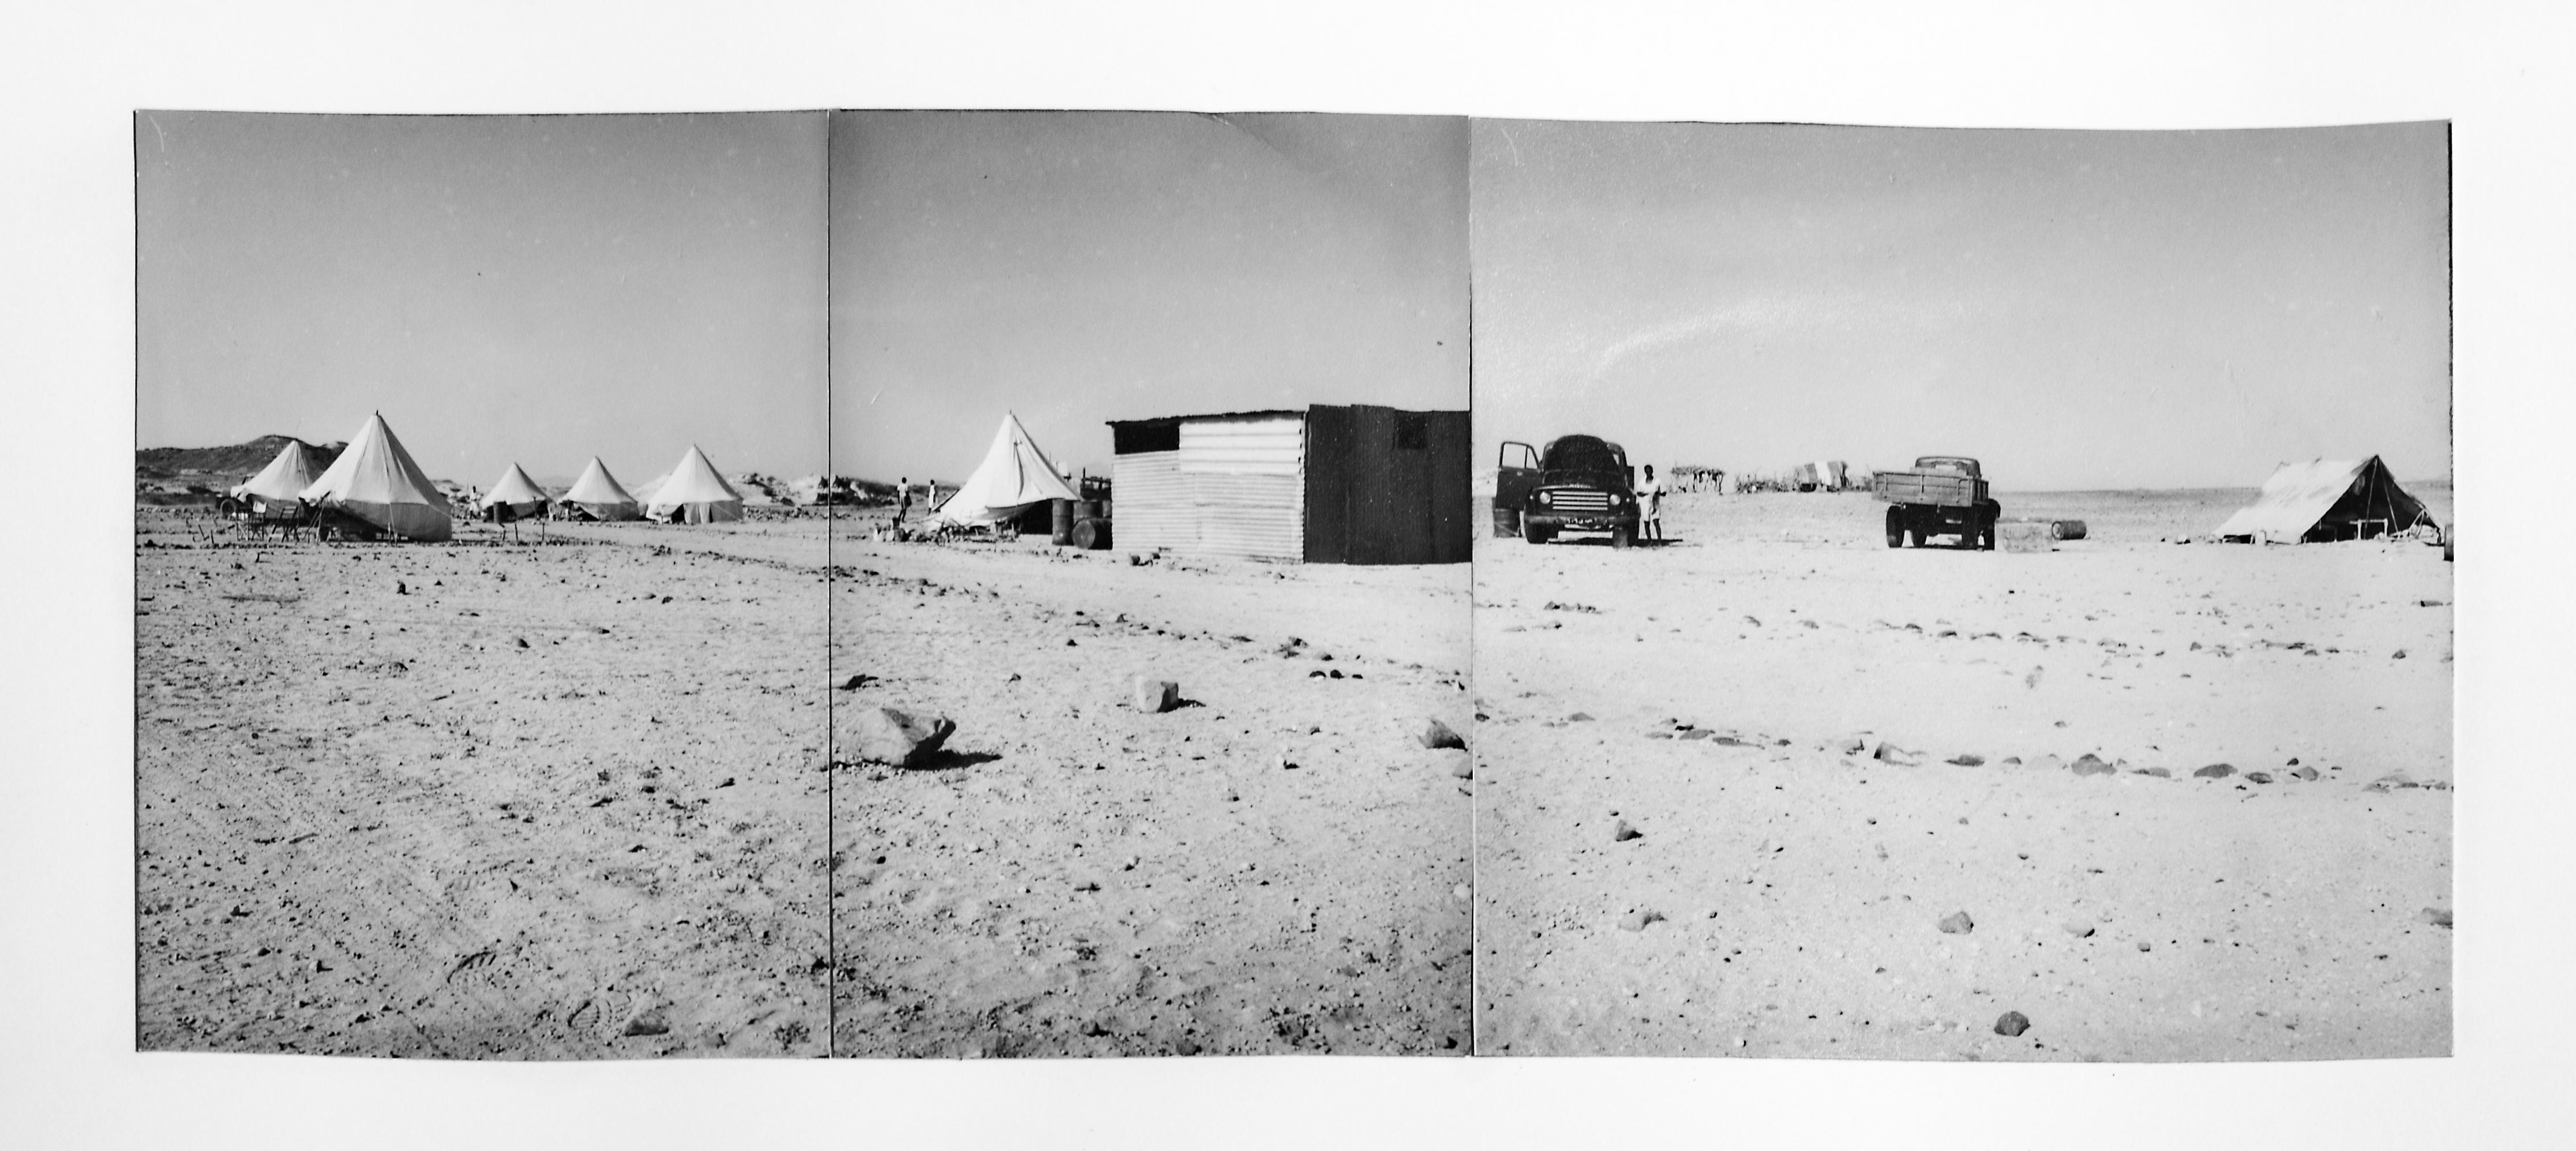 Panoramica dell’accampamento di Et dell’Agip mineraria. Sudan, 1960 (Archivio storico Eni)